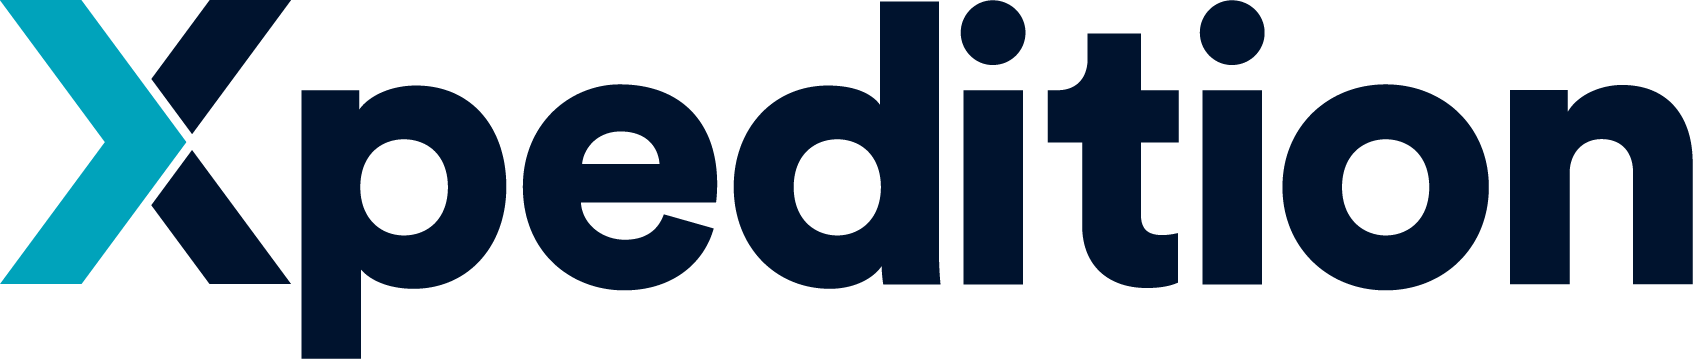 Xpedition_Logo_RGB